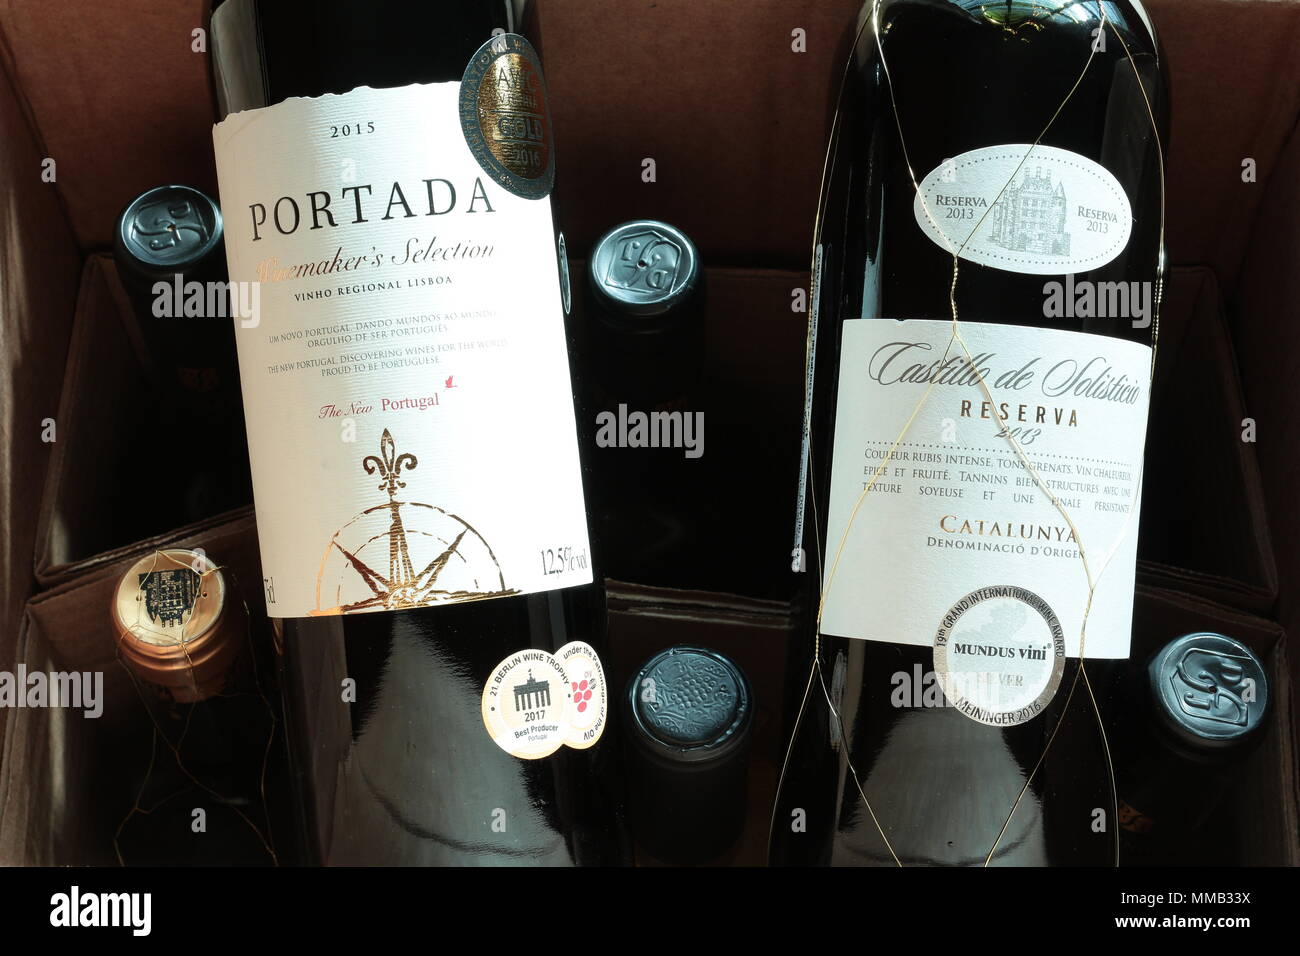 Le bottiglie di vino in una scatola di cartone. Bottiglia di vino etichette. Portada vino portoghese. I vini premiati. Wine Club consegna. Foto Stock